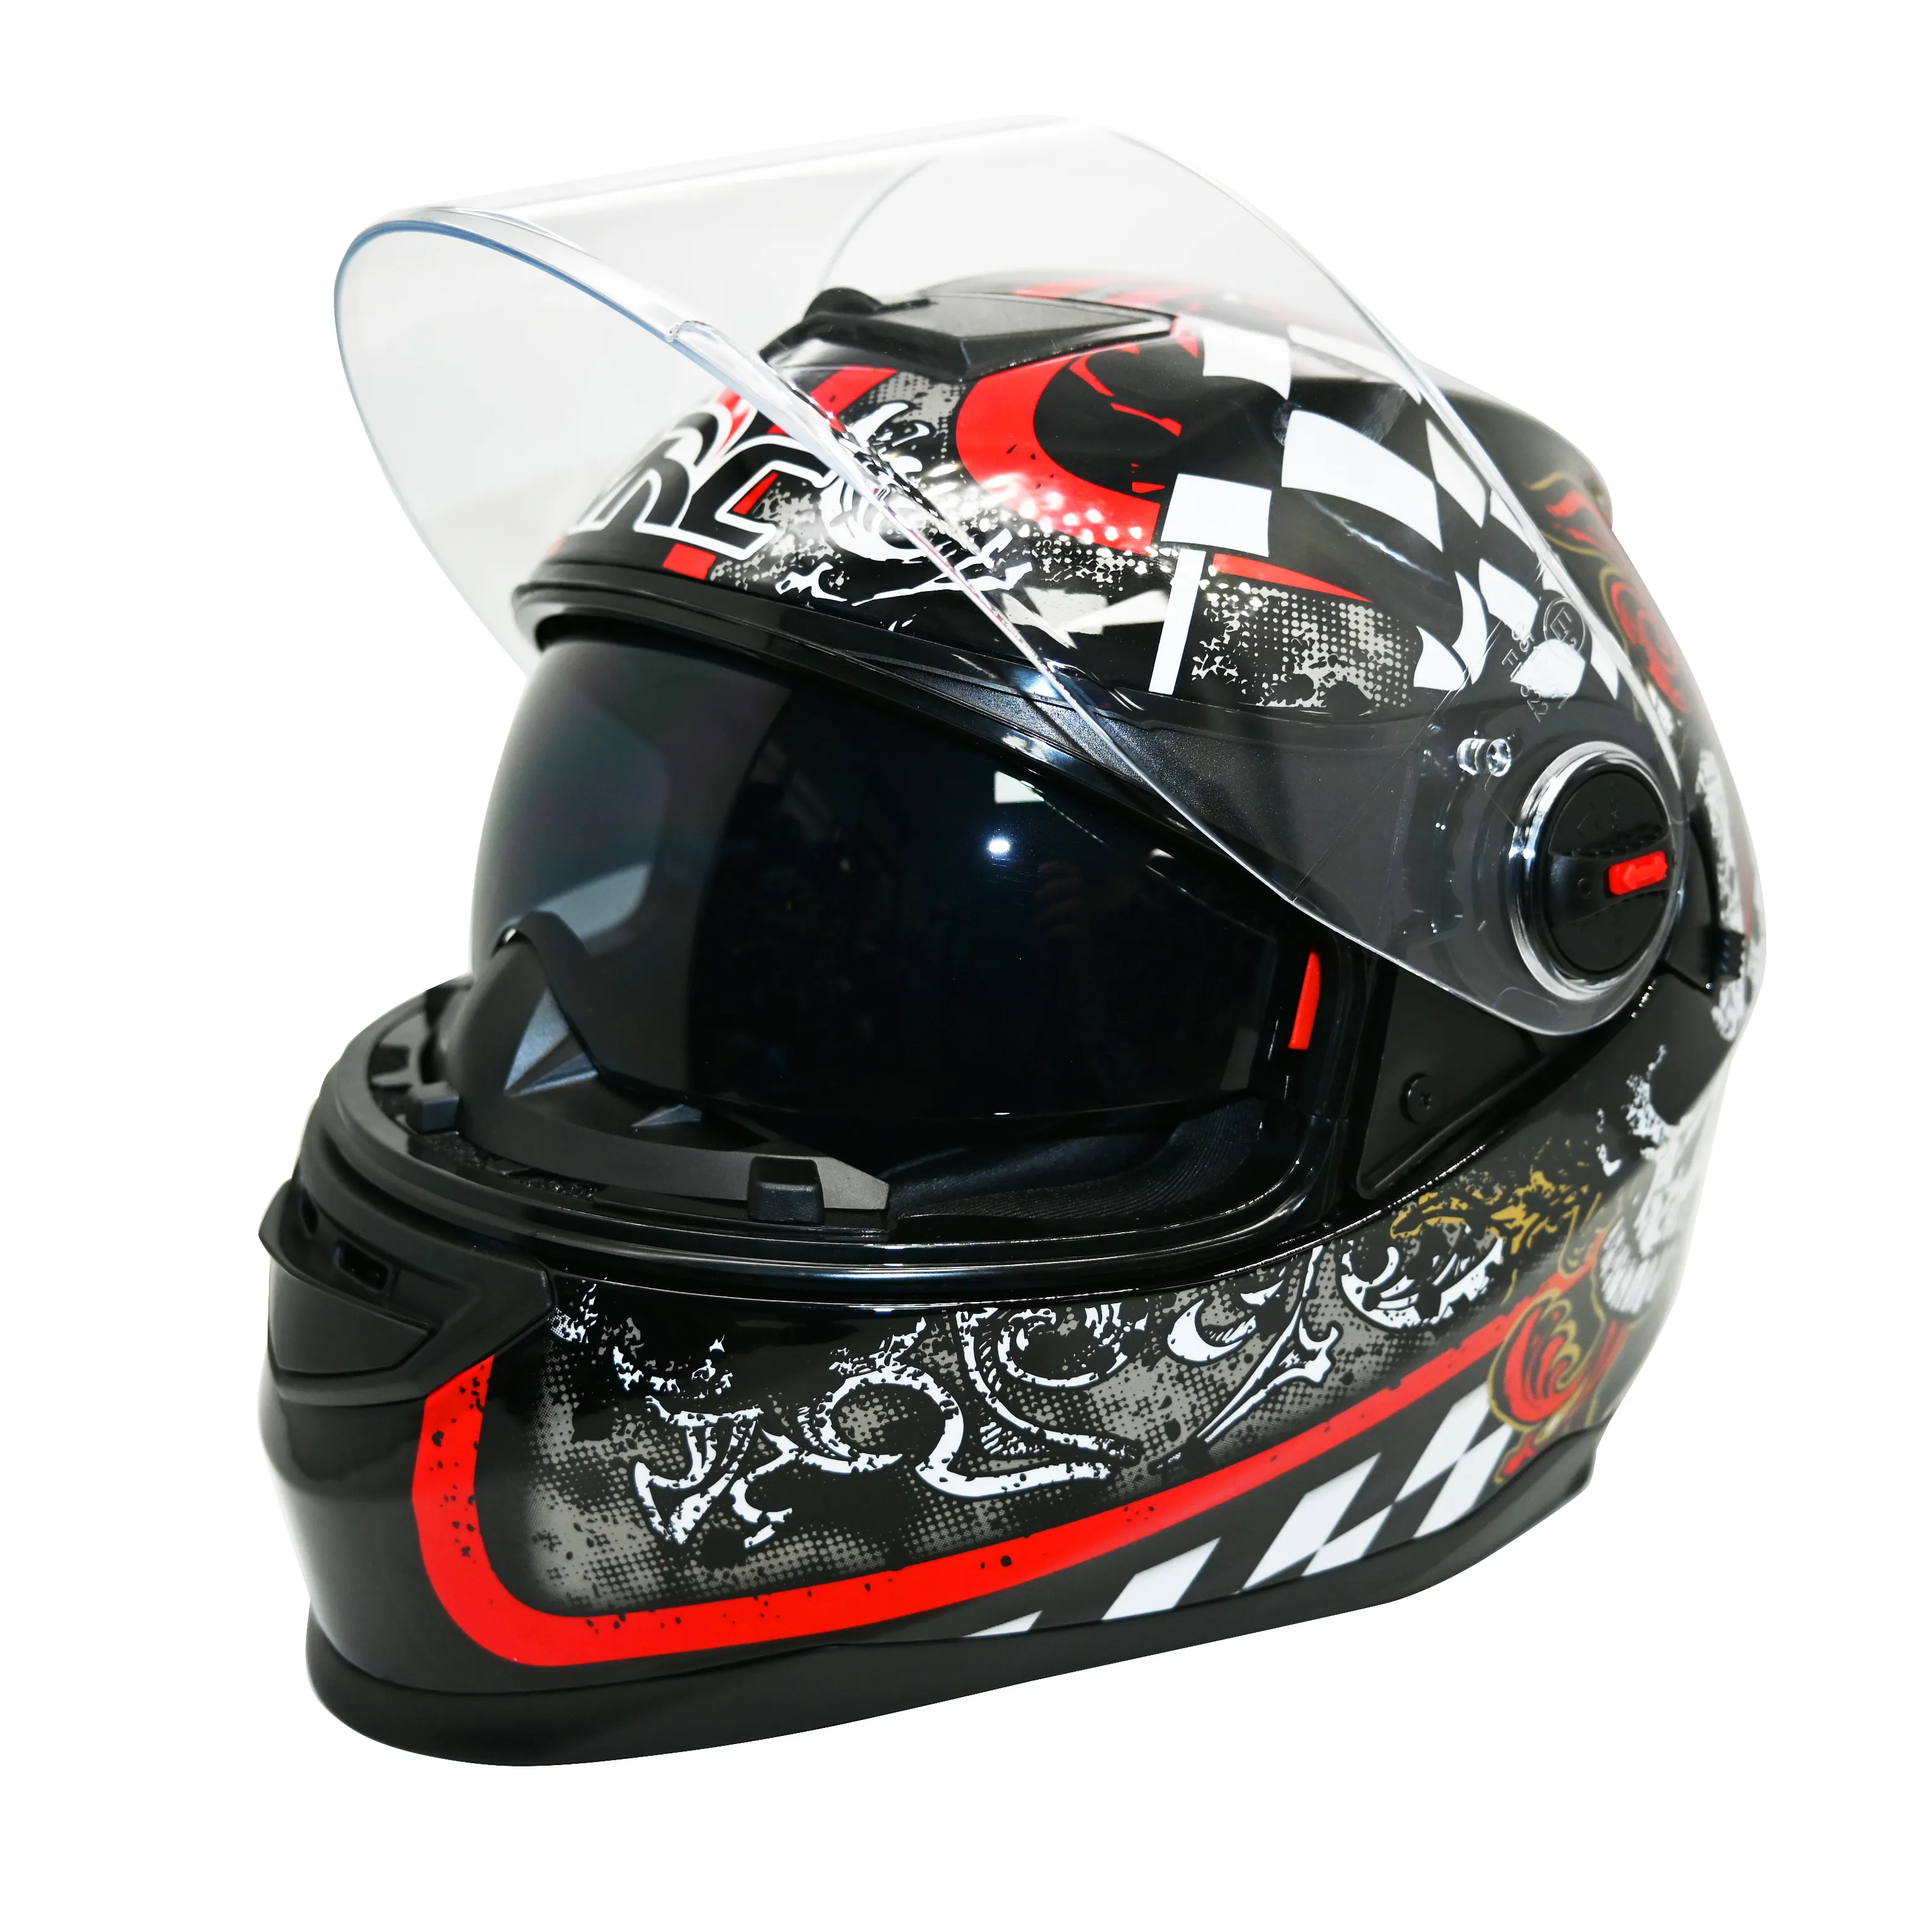 Helm sertifikasi Dot sepeda motor kualitas tinggi OEM ODM helm sepeda motor kustom Visor ganda helm dewasa wajah penuh